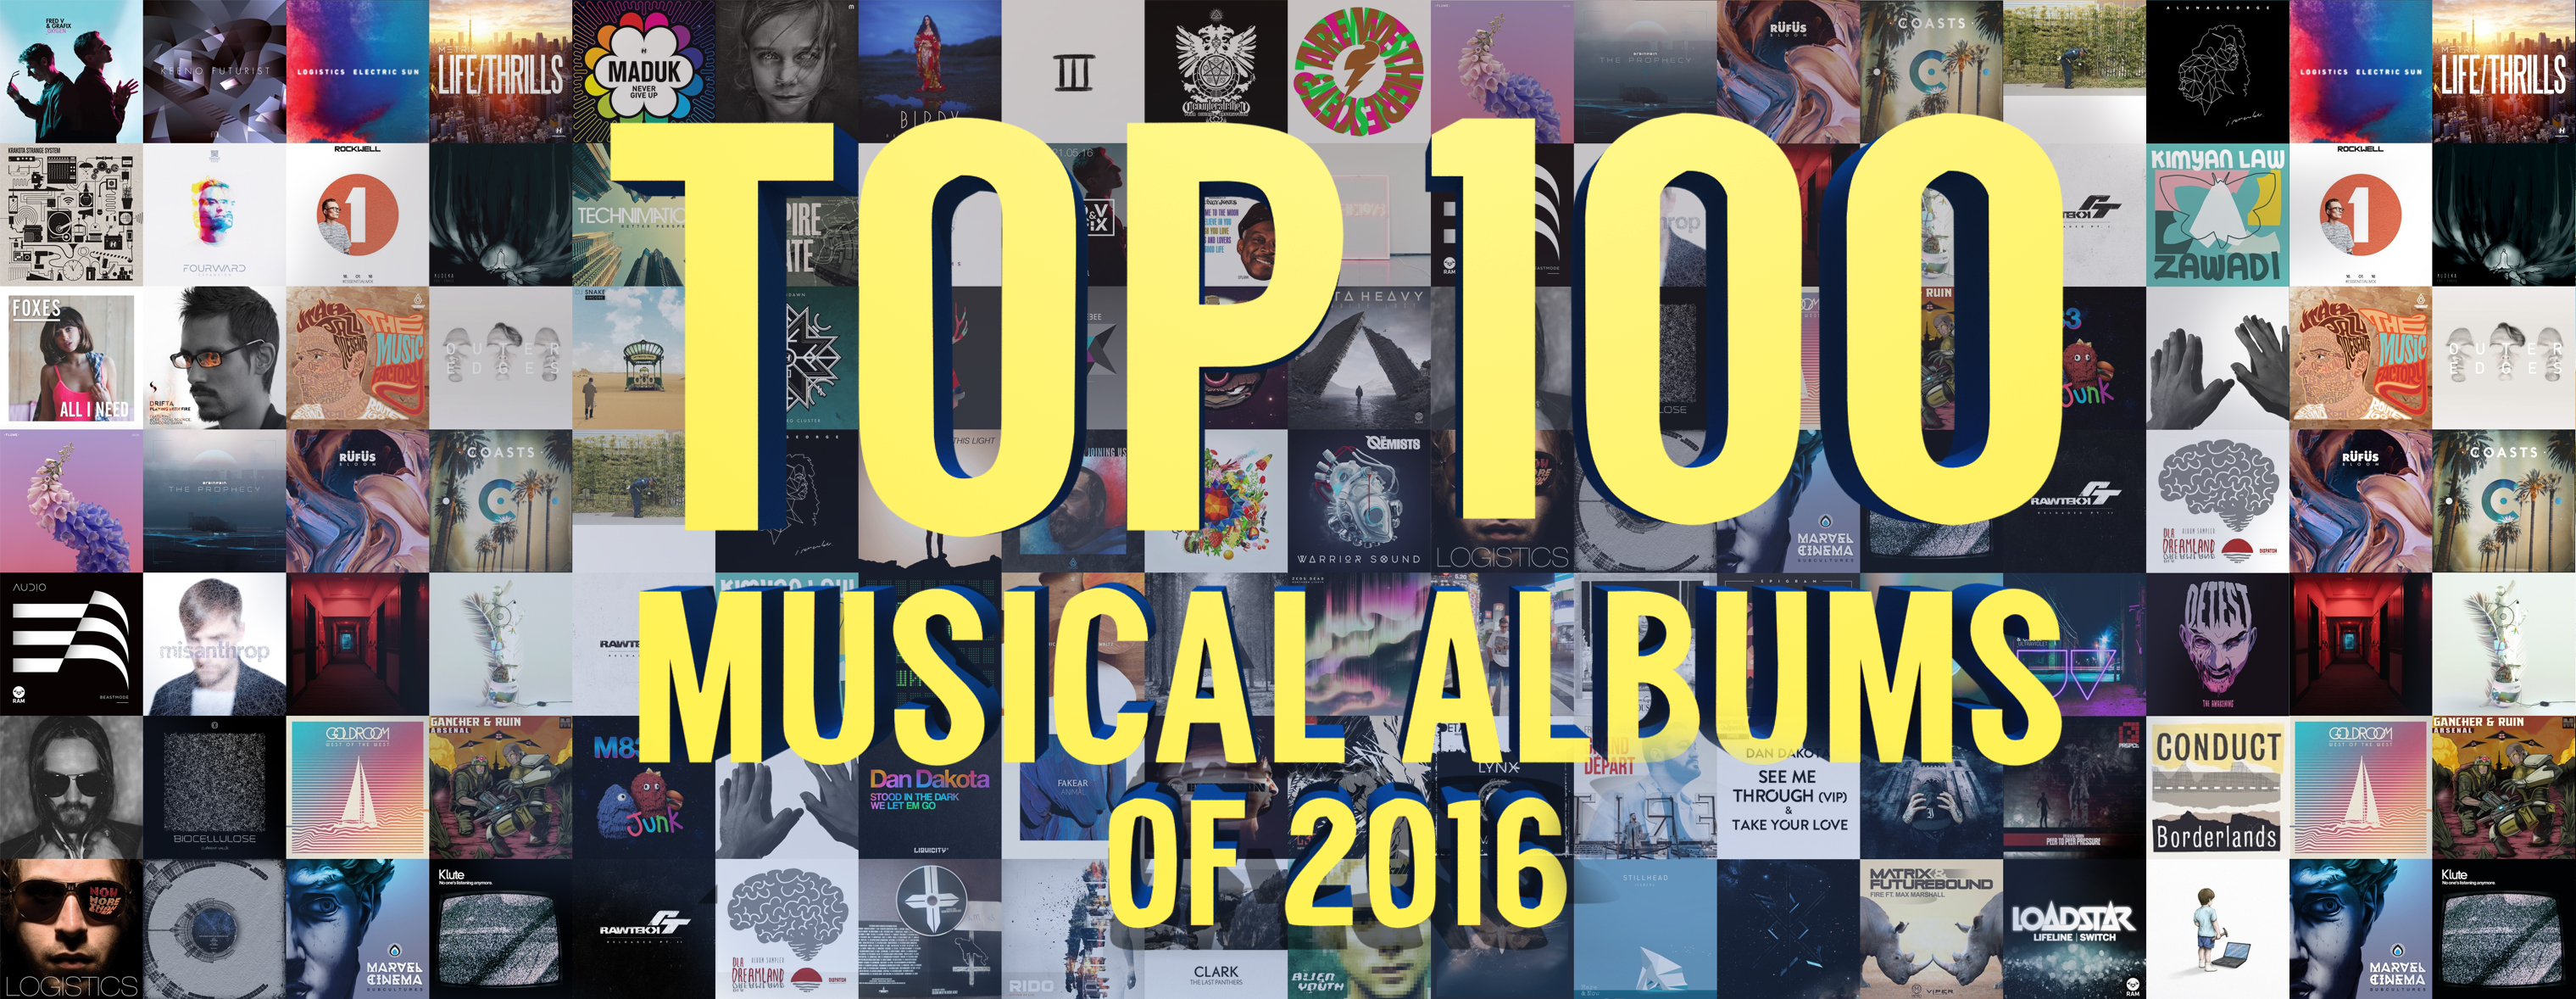 ТОП 100 МУЗЫКАЛЬНЫХ АЛЬБОМОВ 2016
		ПО МОЕЙ ВЕРСИИ / TOP 100 Musical Albums of 2016 version by Splase